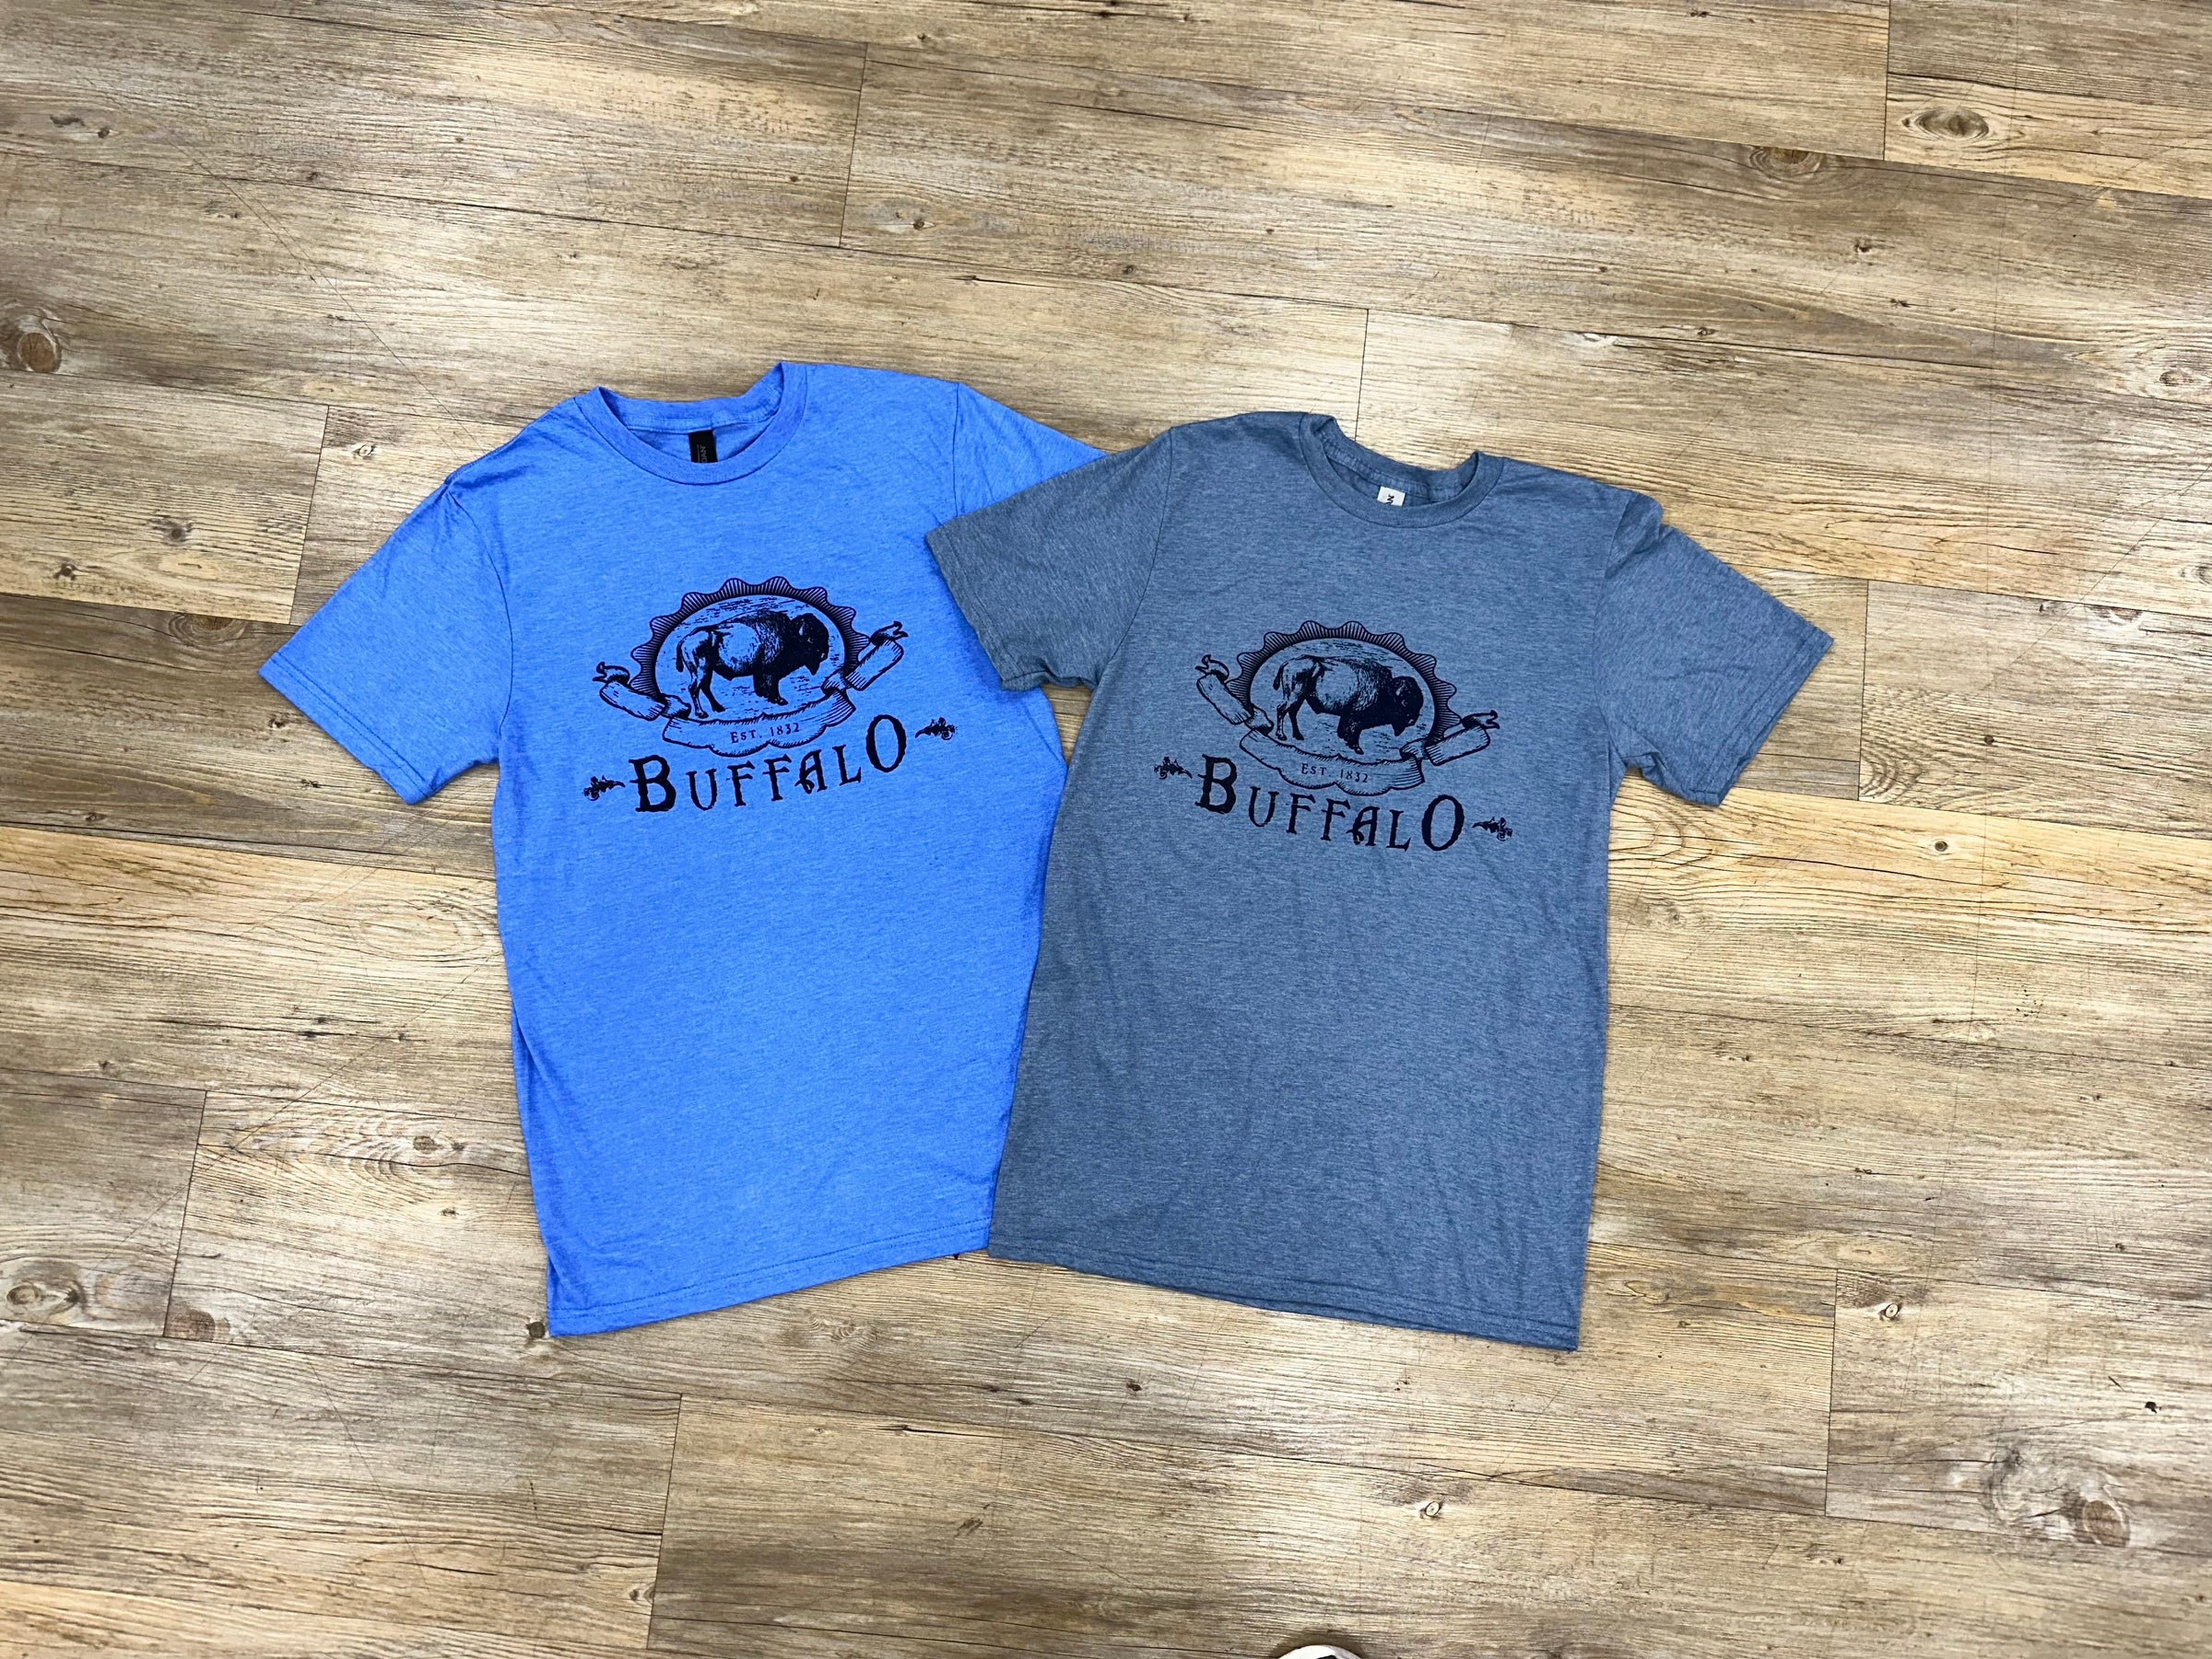 Buffalo NY Apparel  Totally Buffalo Store & More